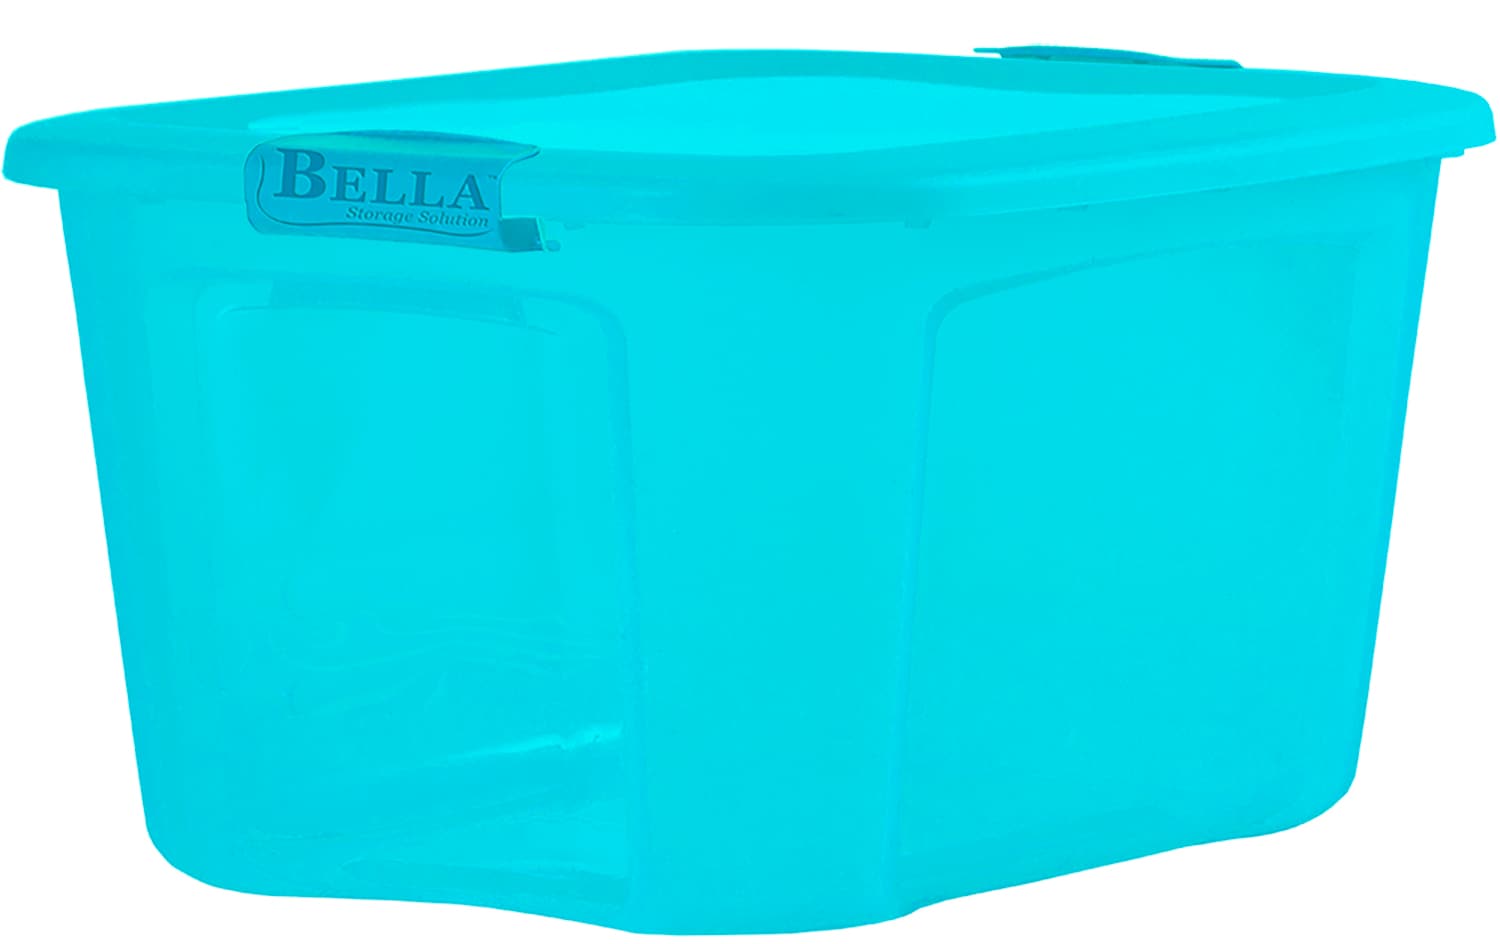 Bella Storage Solution 30 Gallon Locking Lid Storage Container